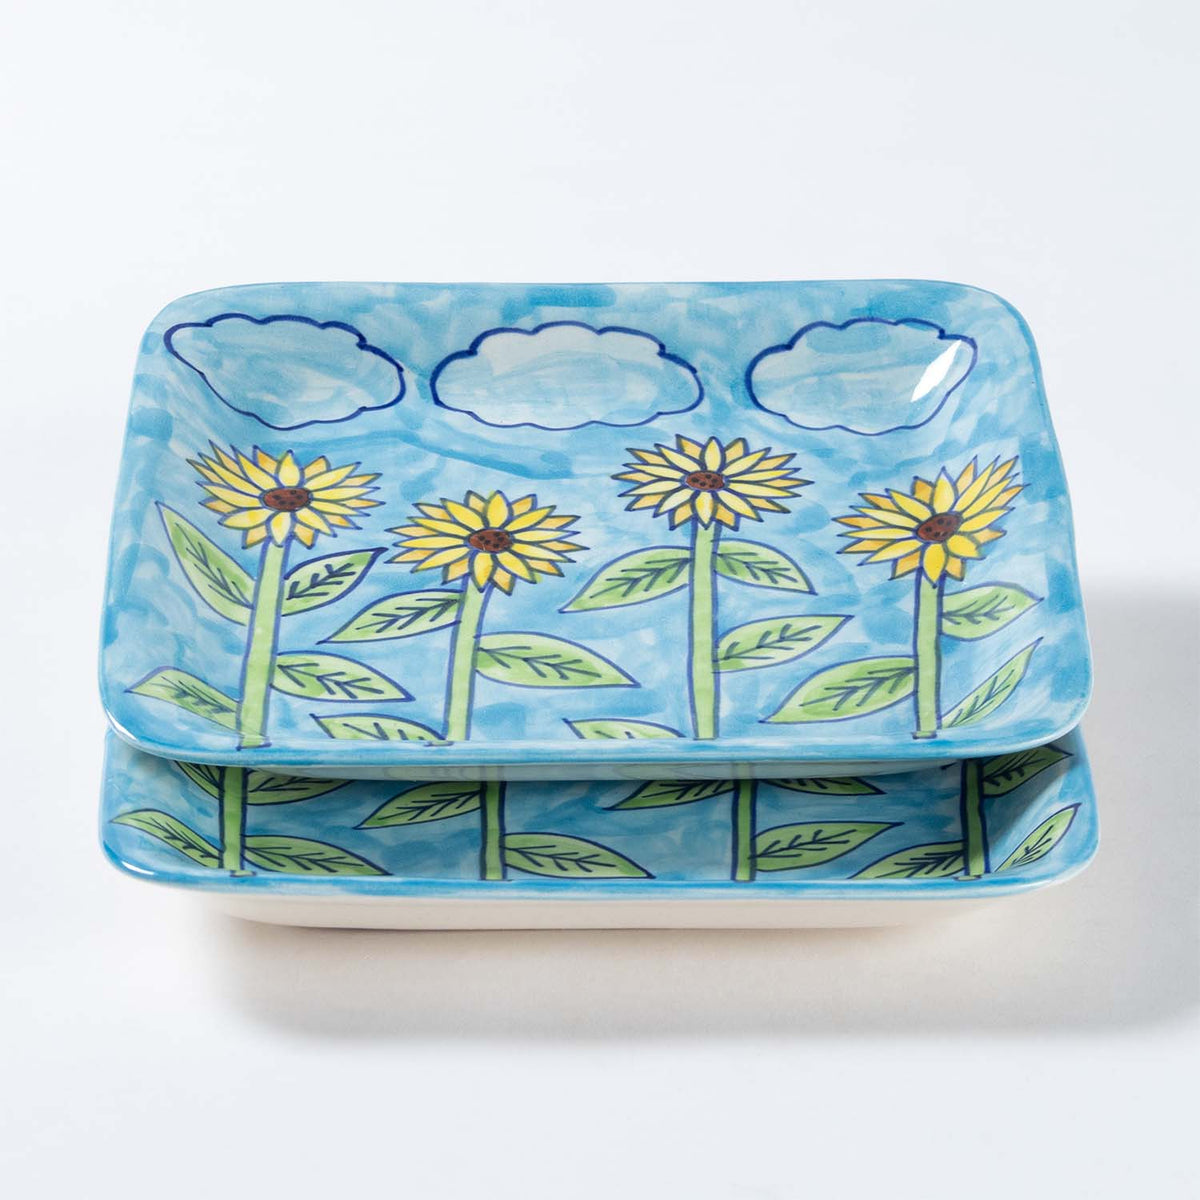 Handpainted Ceramic Square Platters - Set of 2